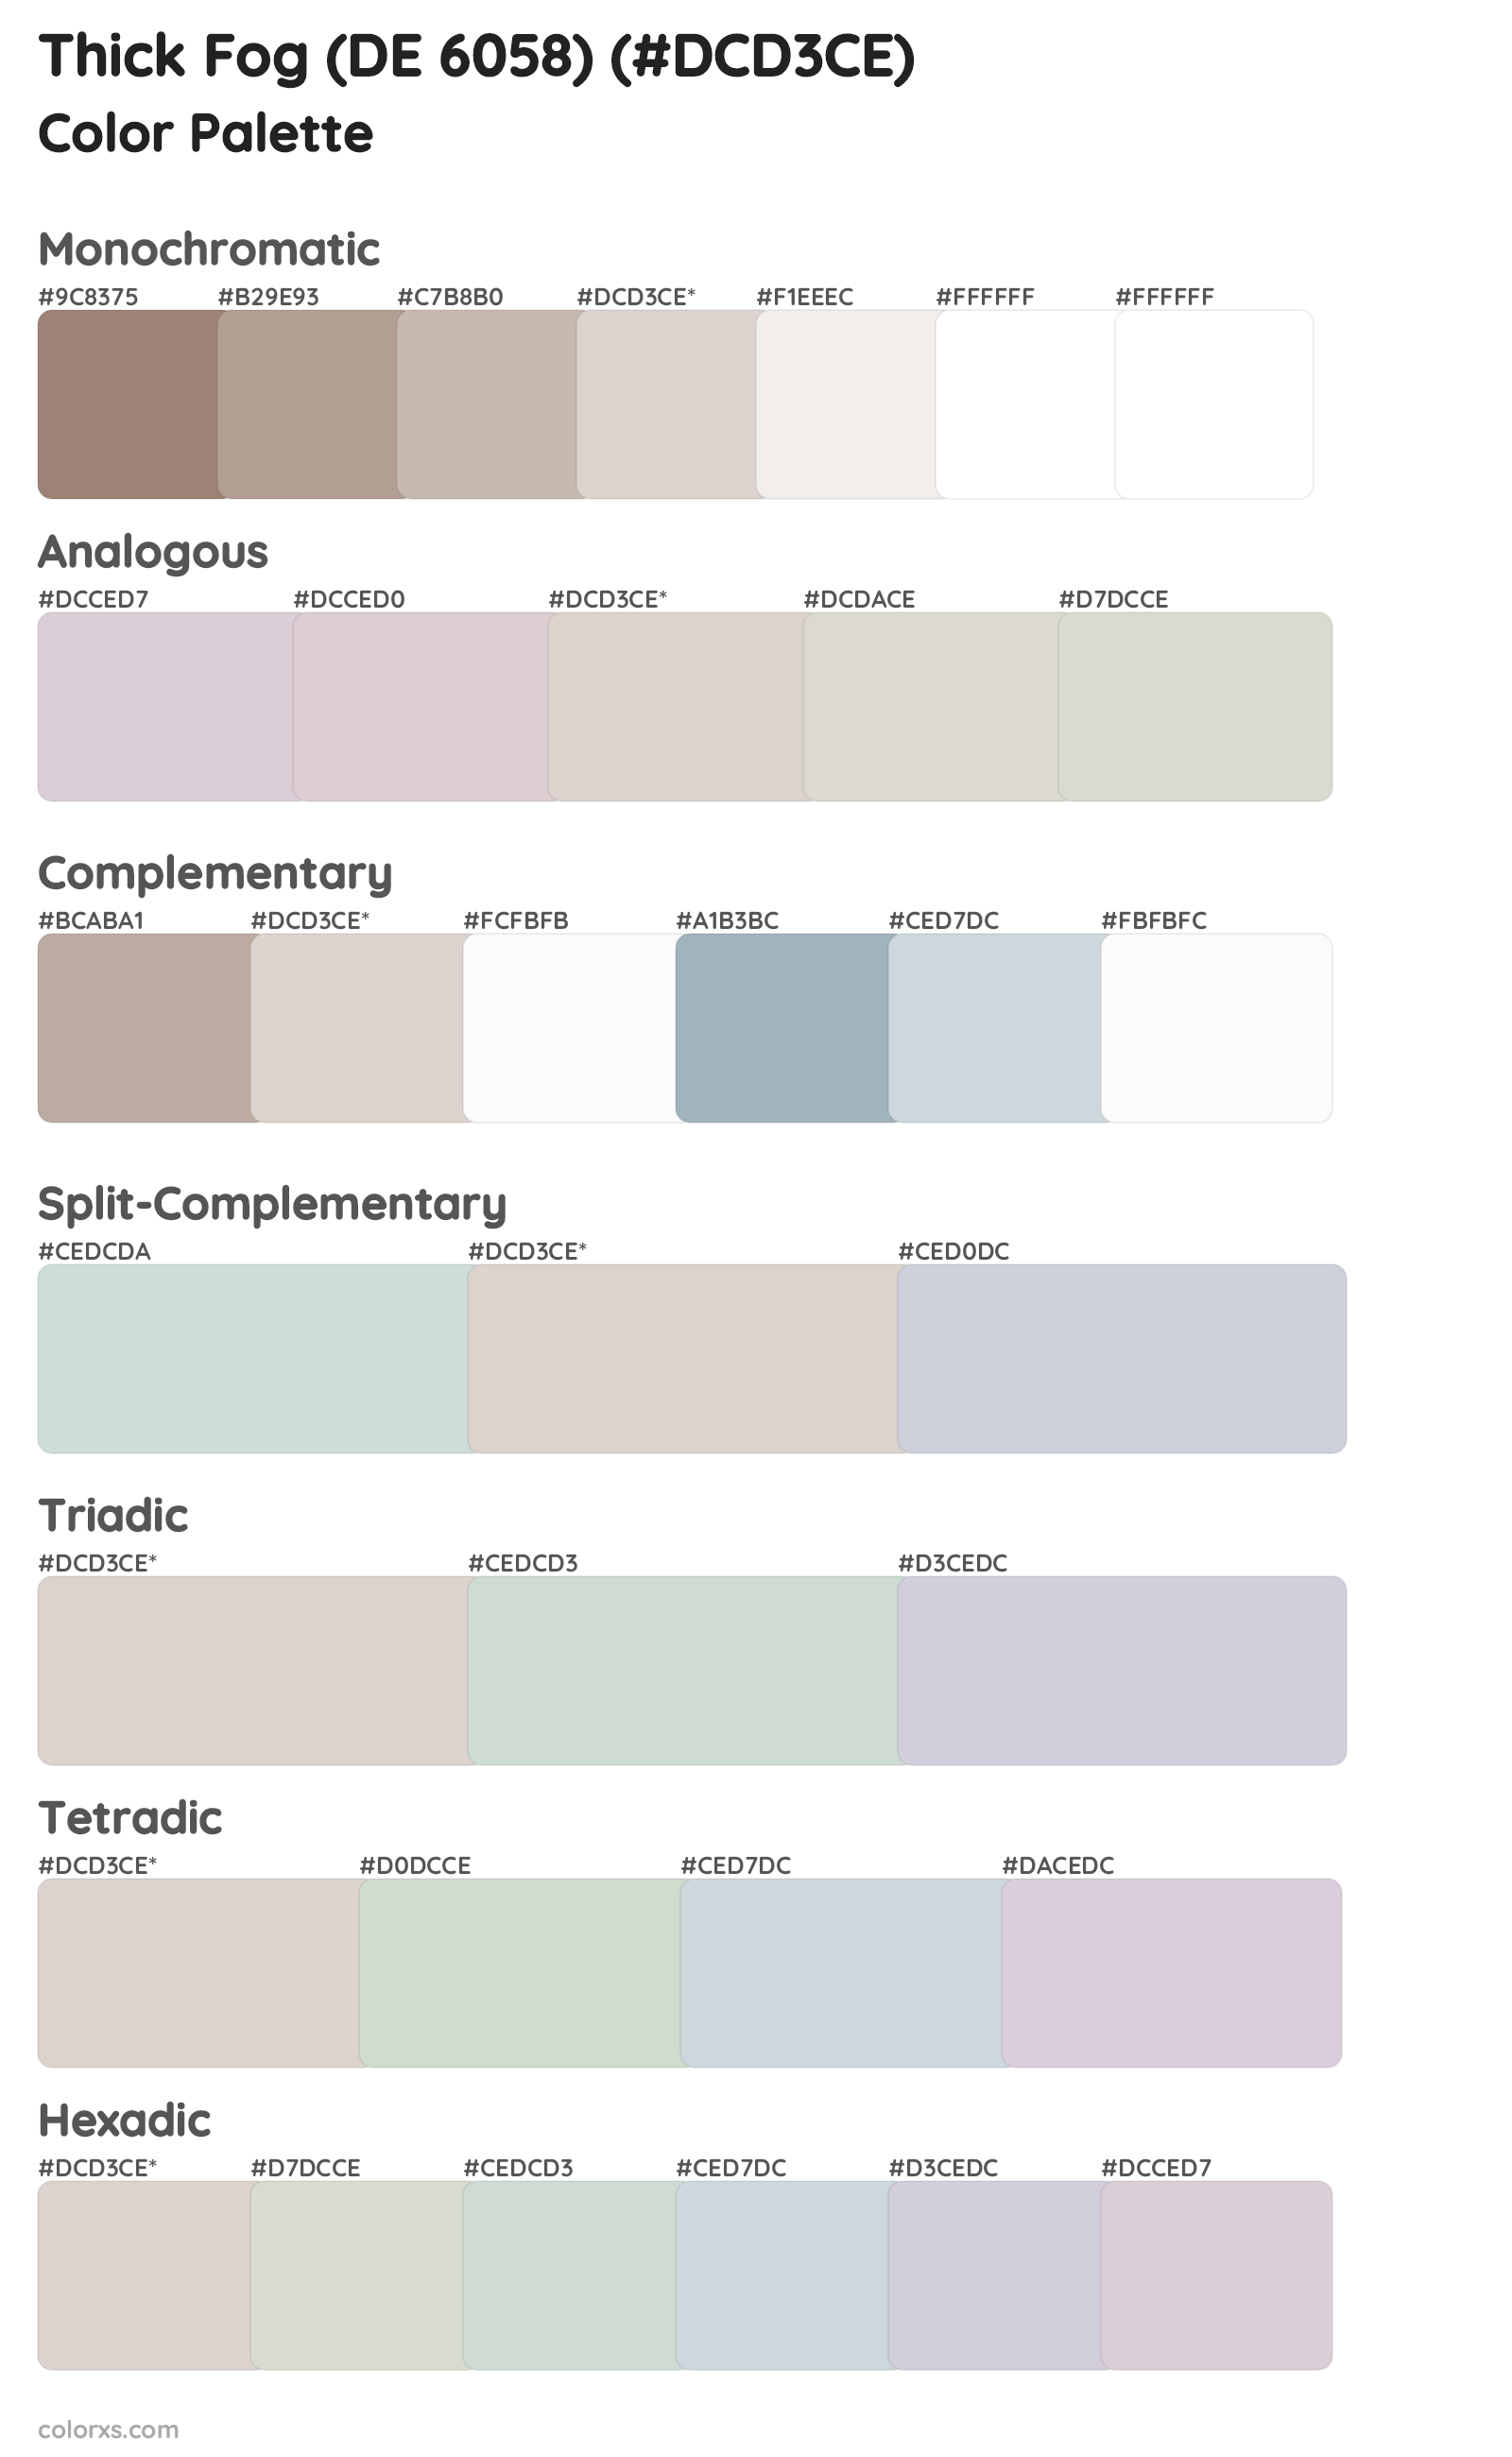 Thick Fog (DE 6058) Color Scheme Palettes